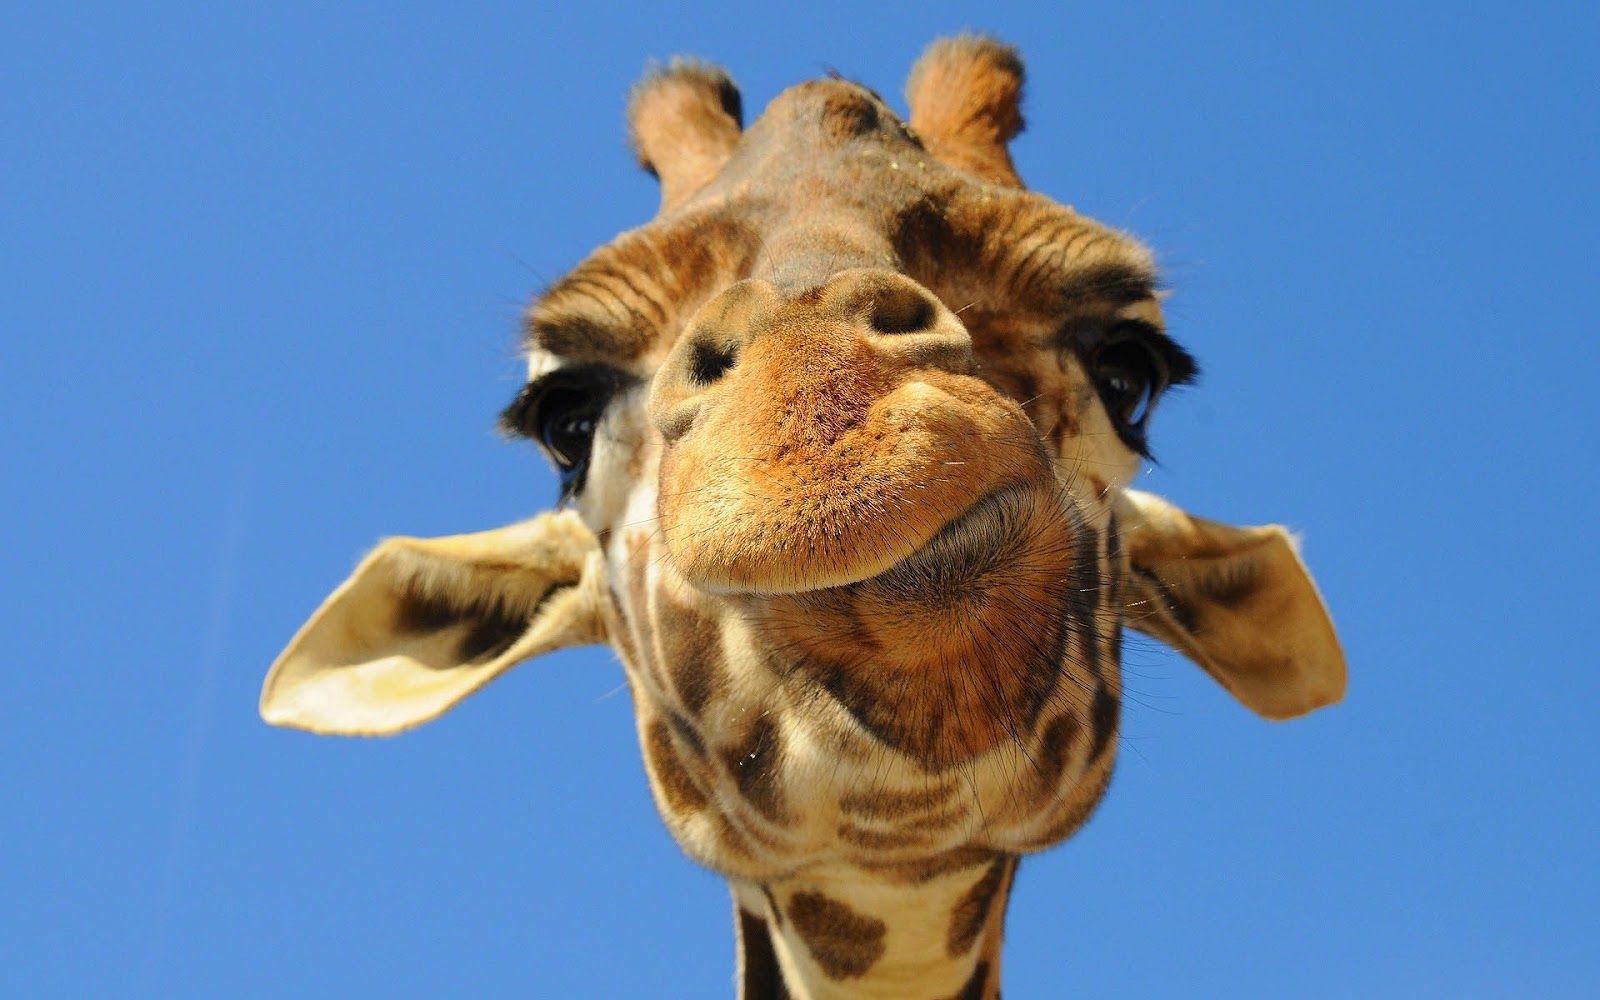 funny giraffe picture.. portrait picture of a giraffe